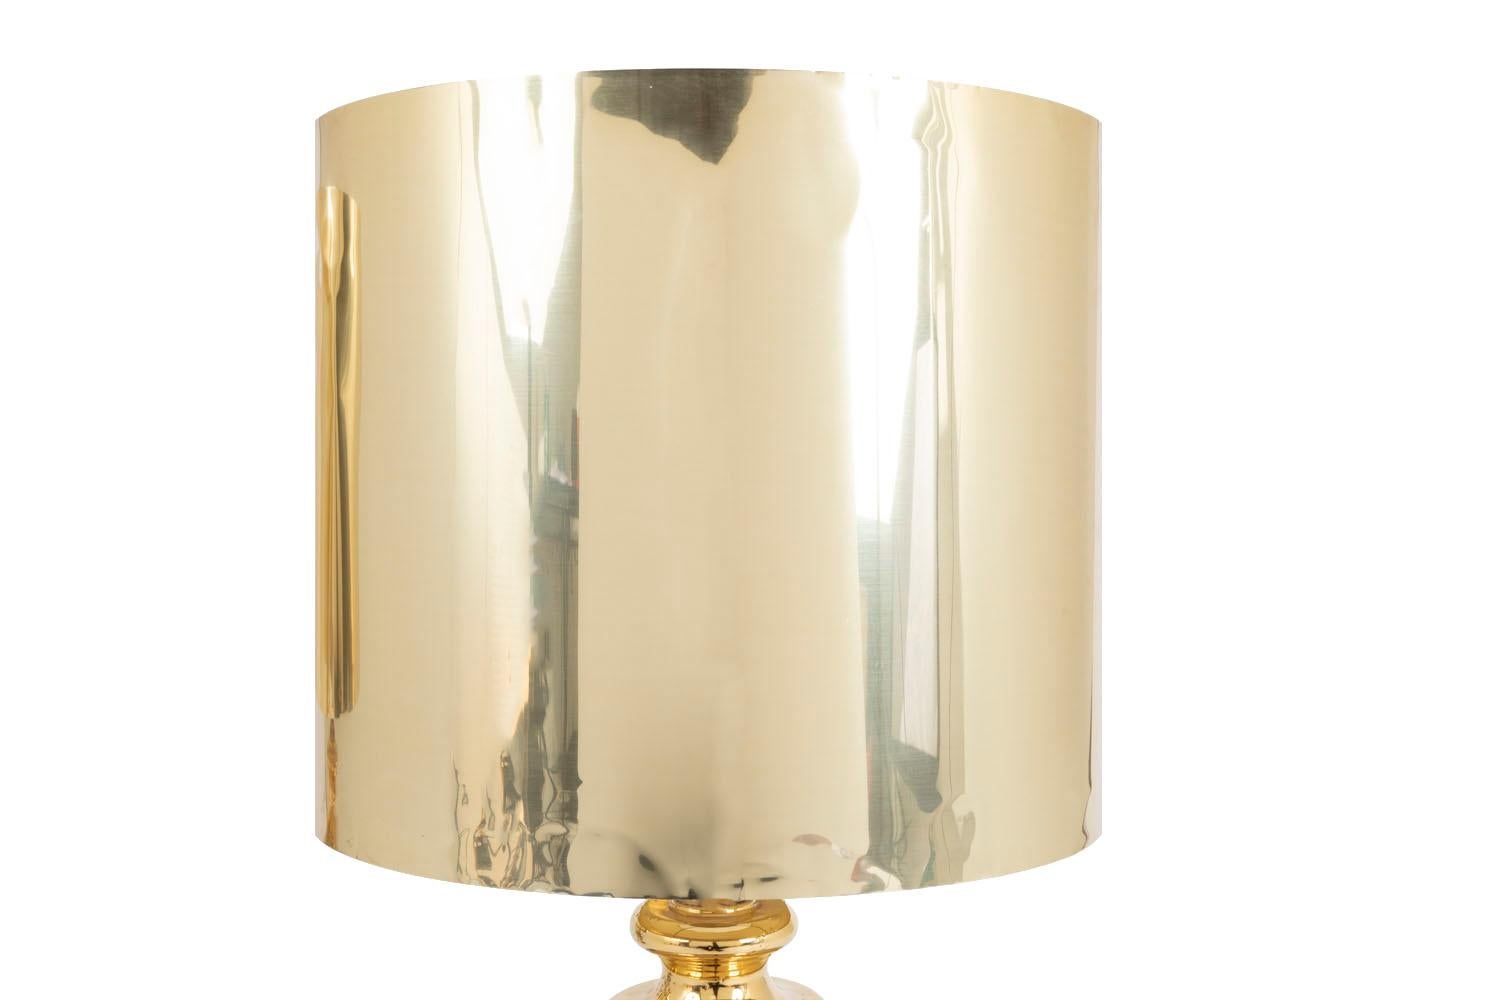 Ein Paar Kugellampen aus Keramik mit Silber- und Goldglanzglasur. Die Lampe steht auf einem quadratischen Silbersockel mit einer abgeschrägten Ecke, die von einer vergoldeten torischen Leiste gekrönt wird, dann eine wichtige silberne Kugelform, die